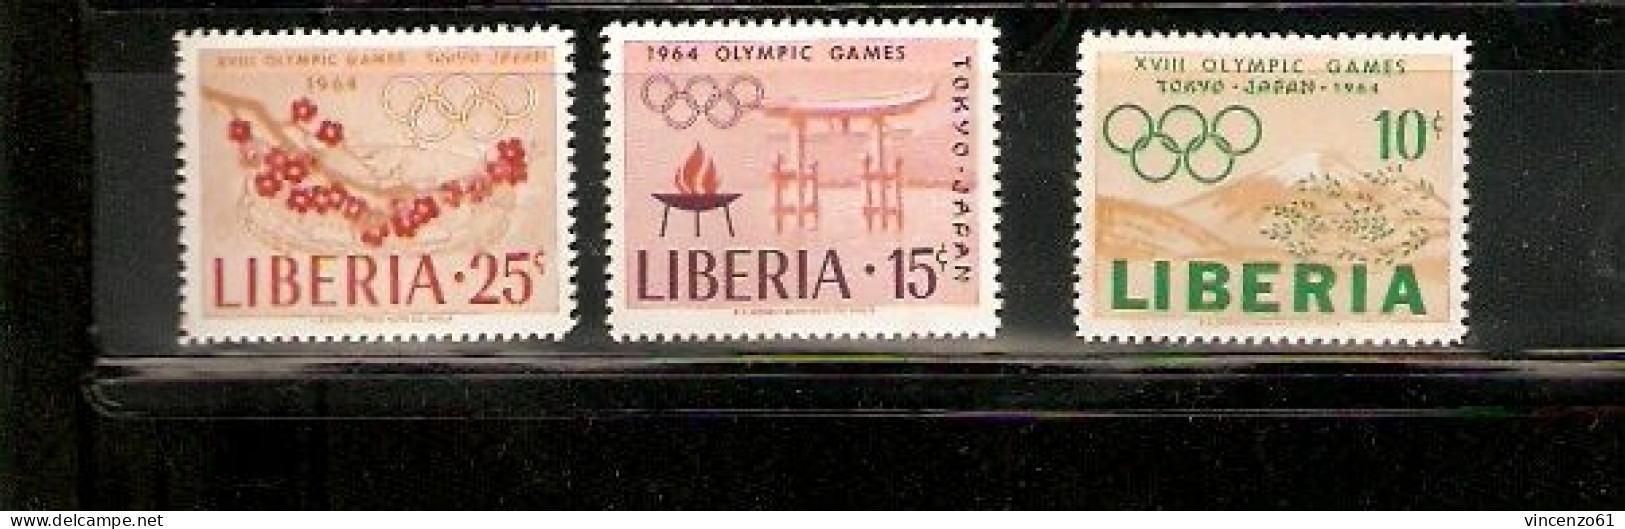 LIBERIA TOKIO OLIMPIC GAME 1964 - Sommer 1964: Tokio